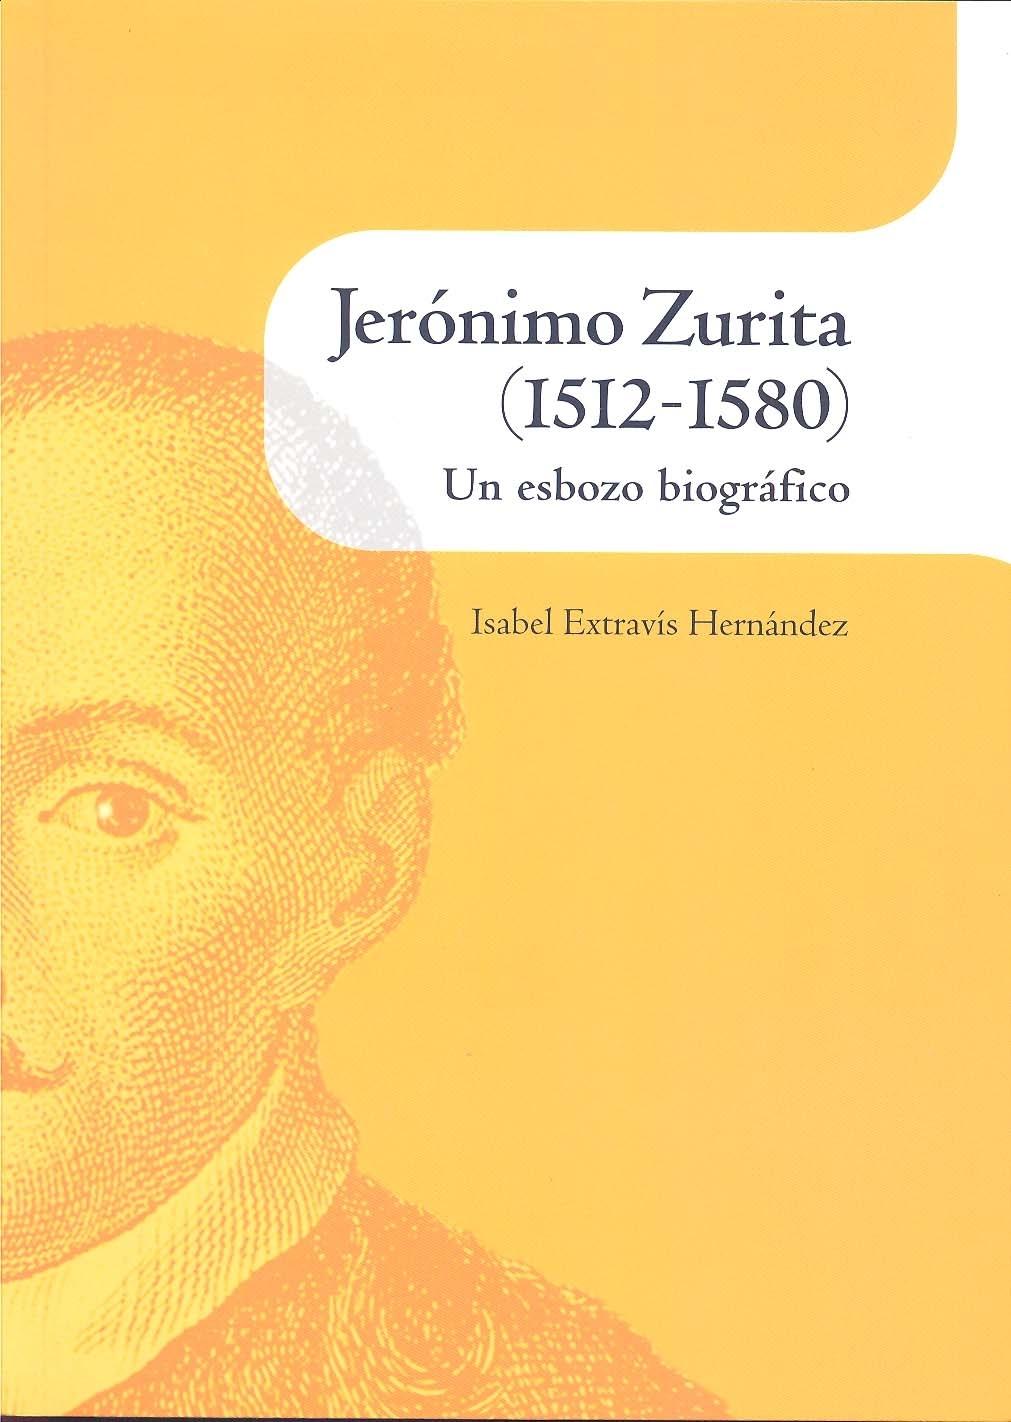 Jerónimo Zurita (1512-1580). Un esbozo biográfico